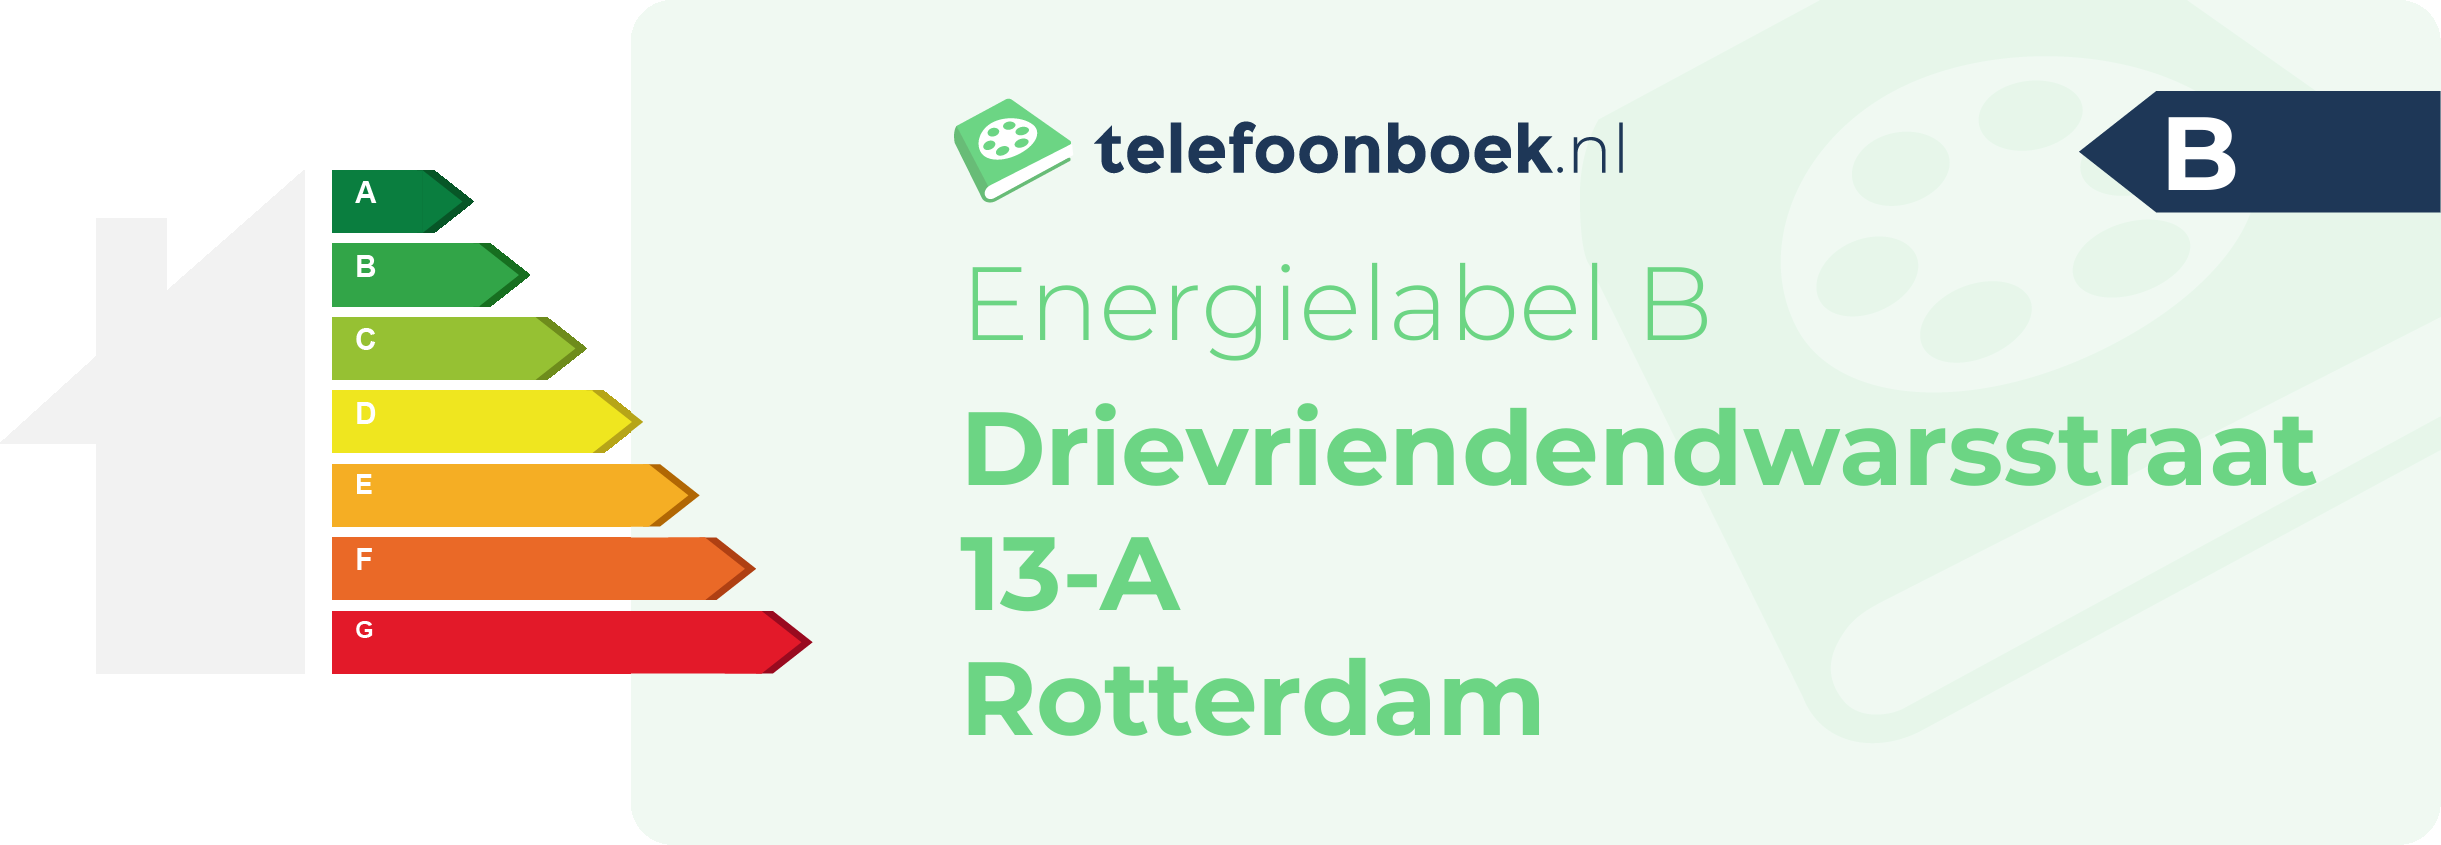 Energielabel Drievriendendwarsstraat 13-A Rotterdam